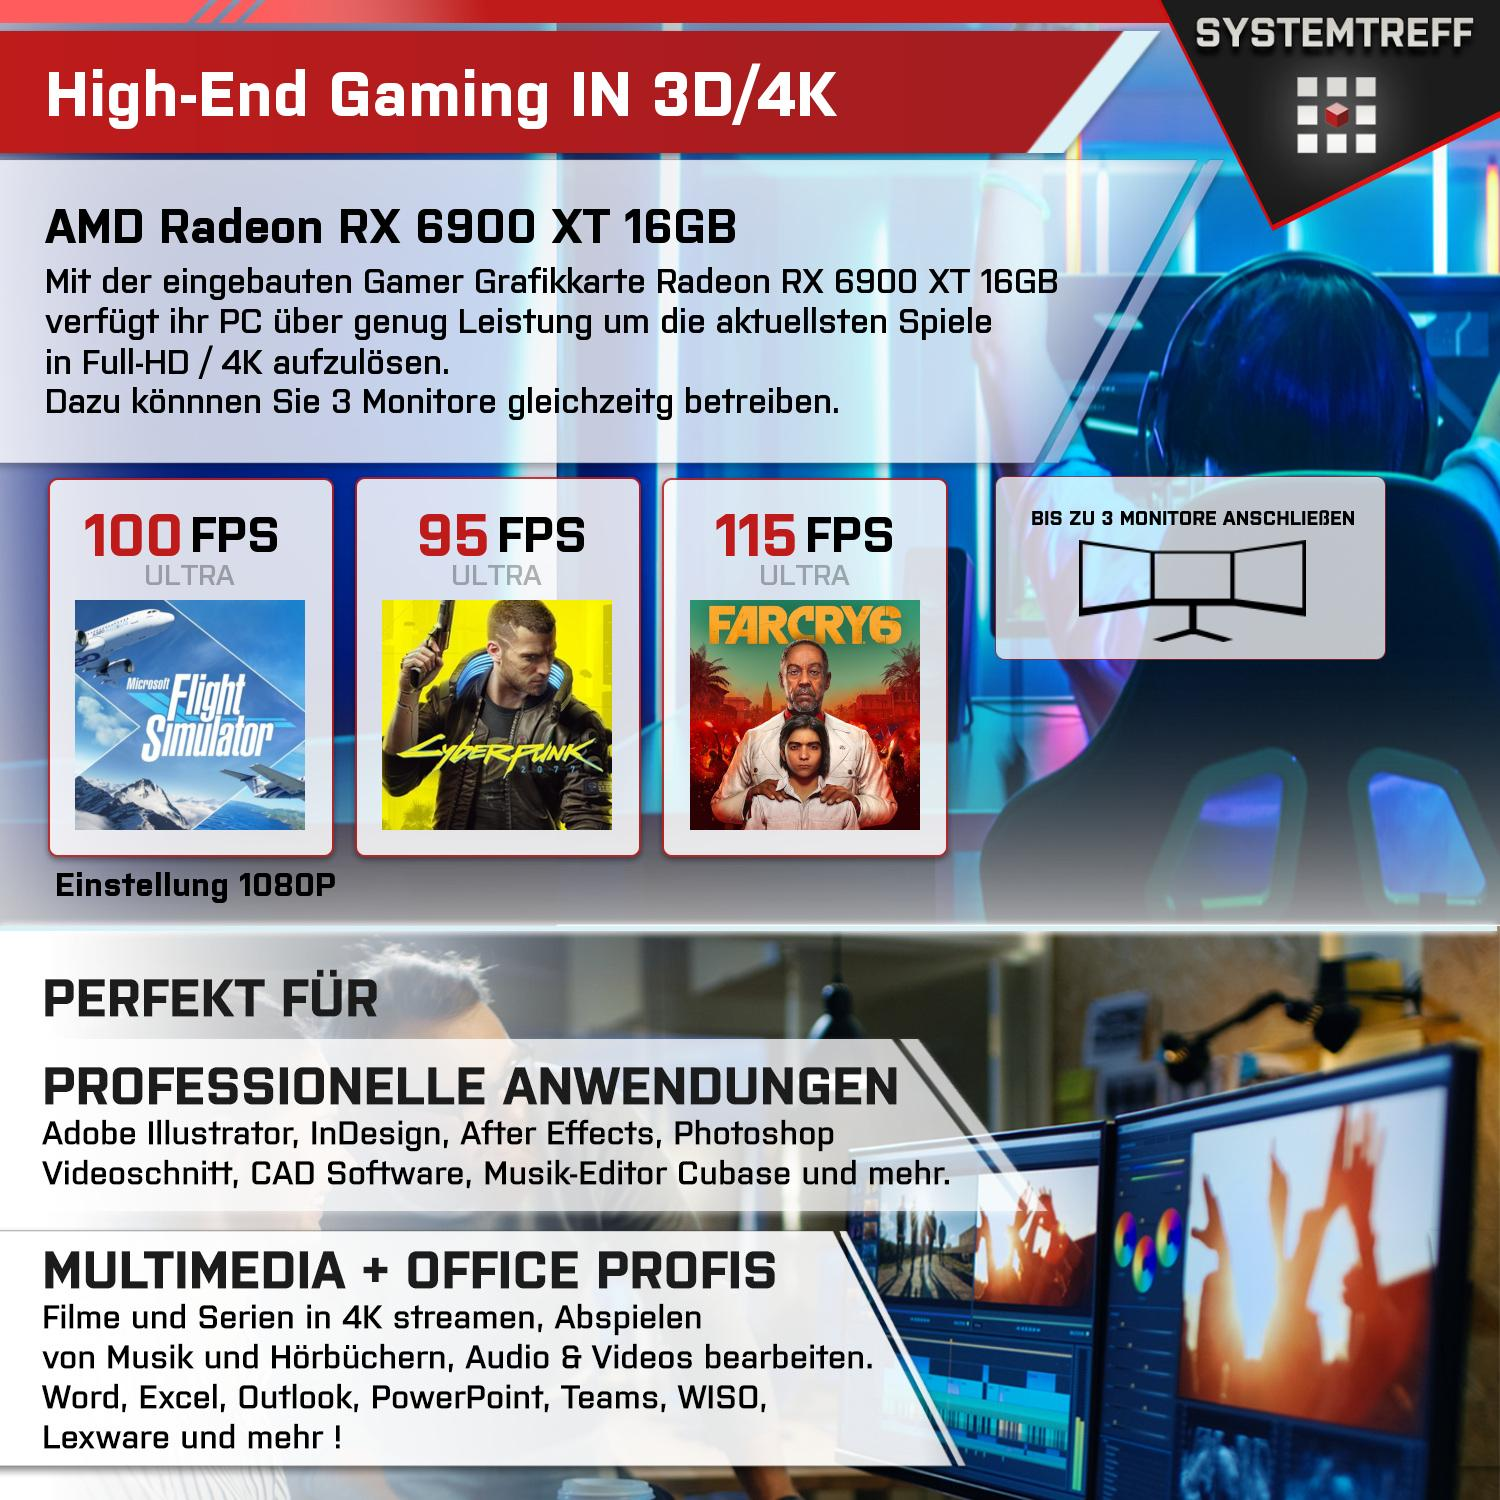 SYSTEMTREFF Gaming Komplett 16GB Radeon mit GDDR6, GB Ryzen Komplett 6900 16 AMD PC GB 1000 5800X, 5800X XT AMD RX GB mSSD, RAM, Prozessor, 7 32